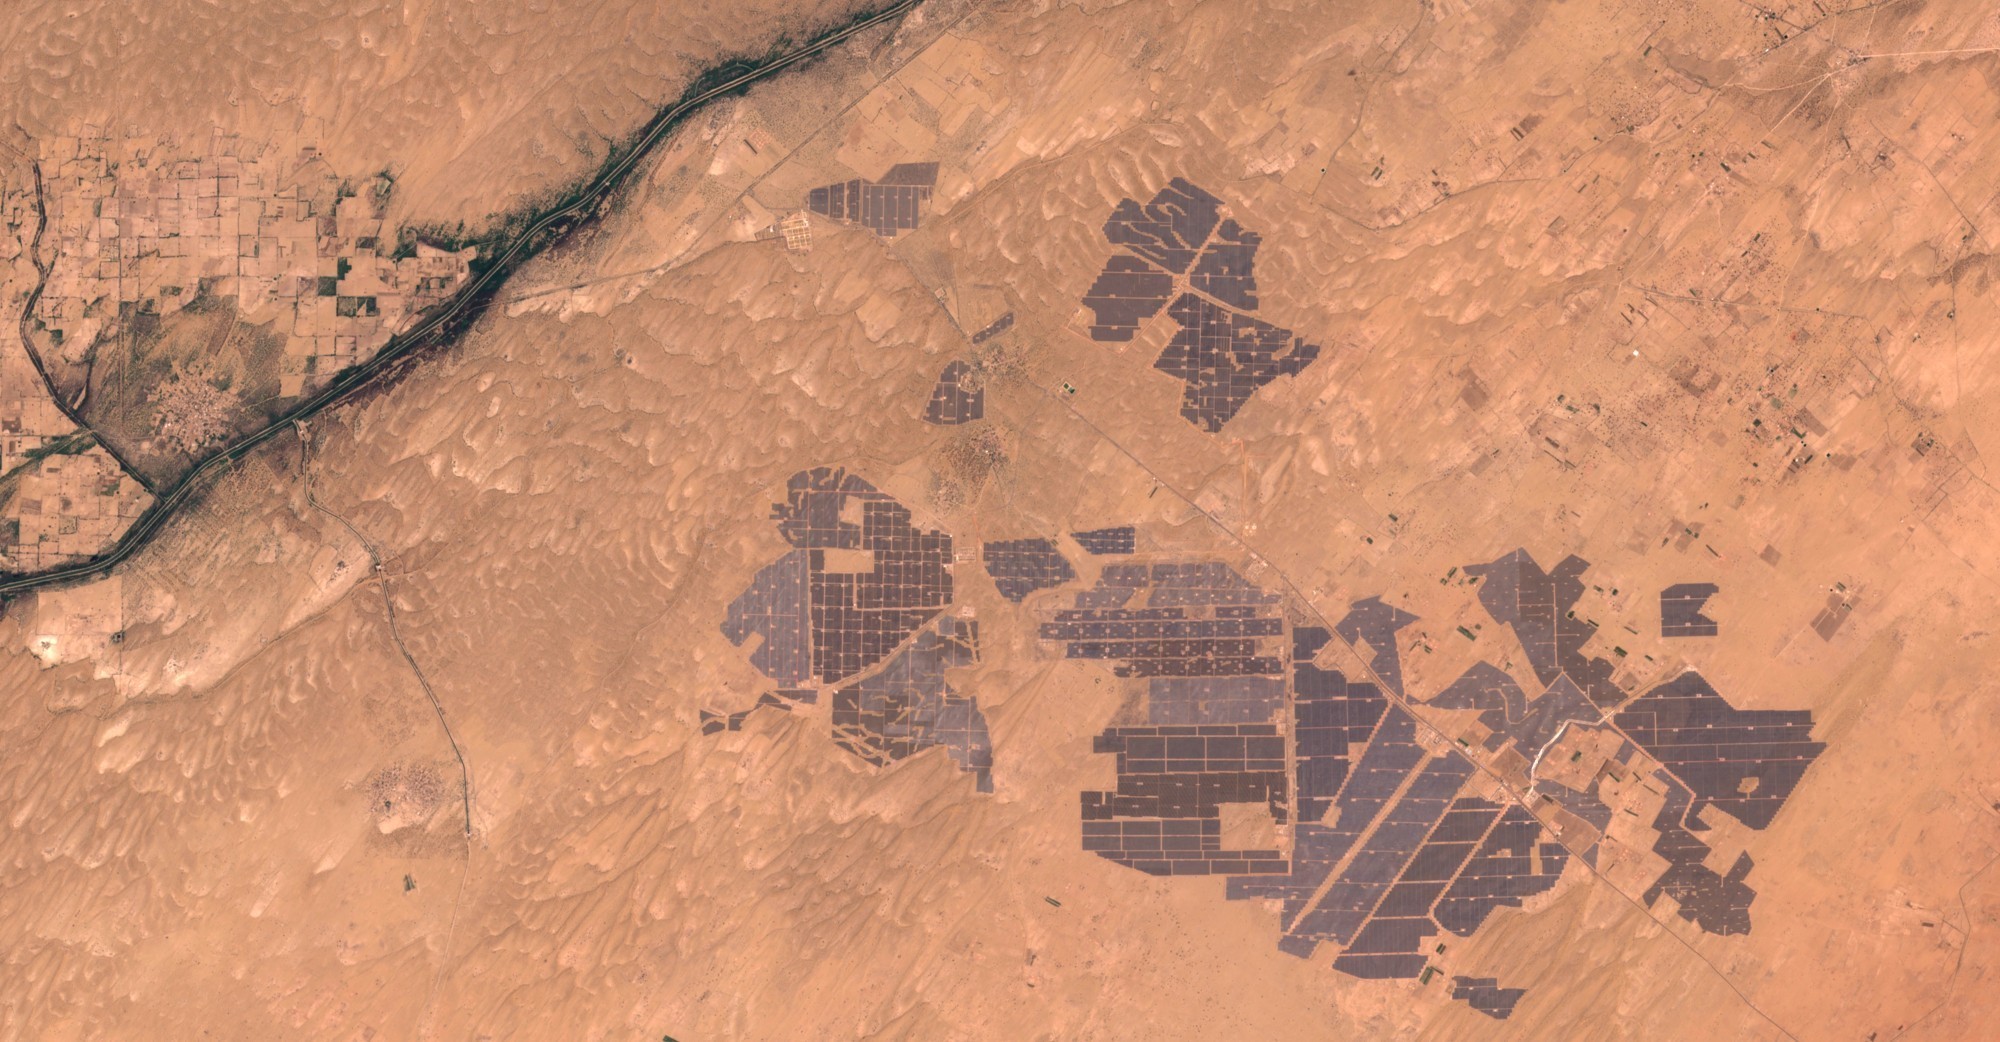 En 2020, un astronaute a capturé l’image impressionnante du parc solaire de Badla, la plus grande centrale solaire au monde, qui s’étend sur 56 km2 dans le désert du Rajasthan en Inde. Cette installation, située près du village de Badla, produit de l’éner